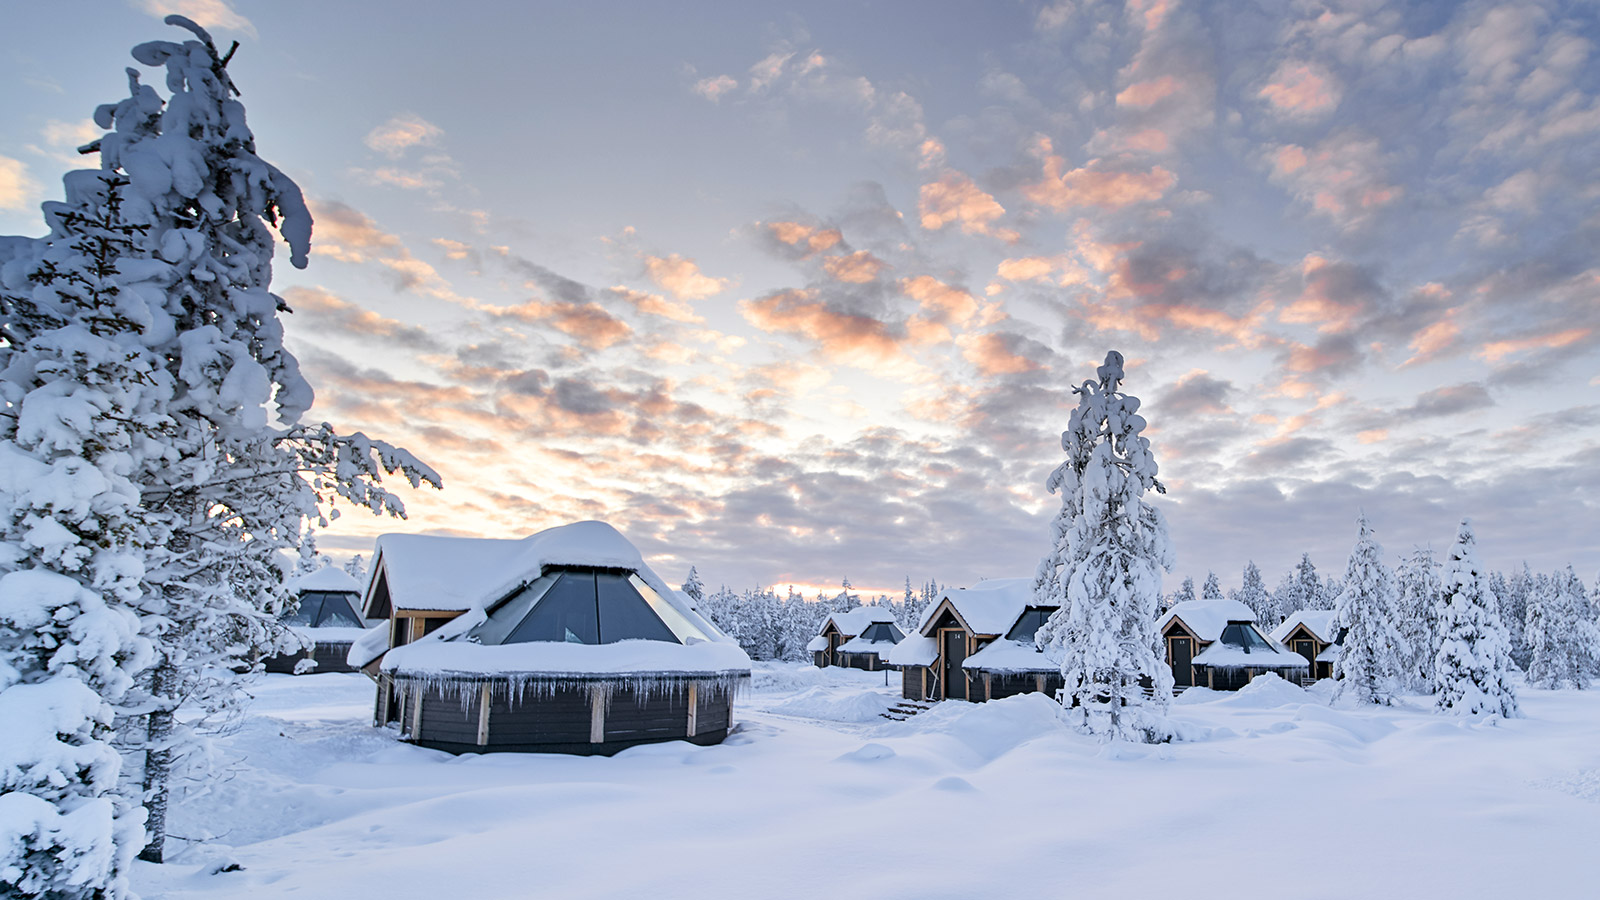 De Aurora Cabins zijn dé manier om tijdens de winterse nachten de prachtige sterrenhemel en het noorderlicht te bewonderen